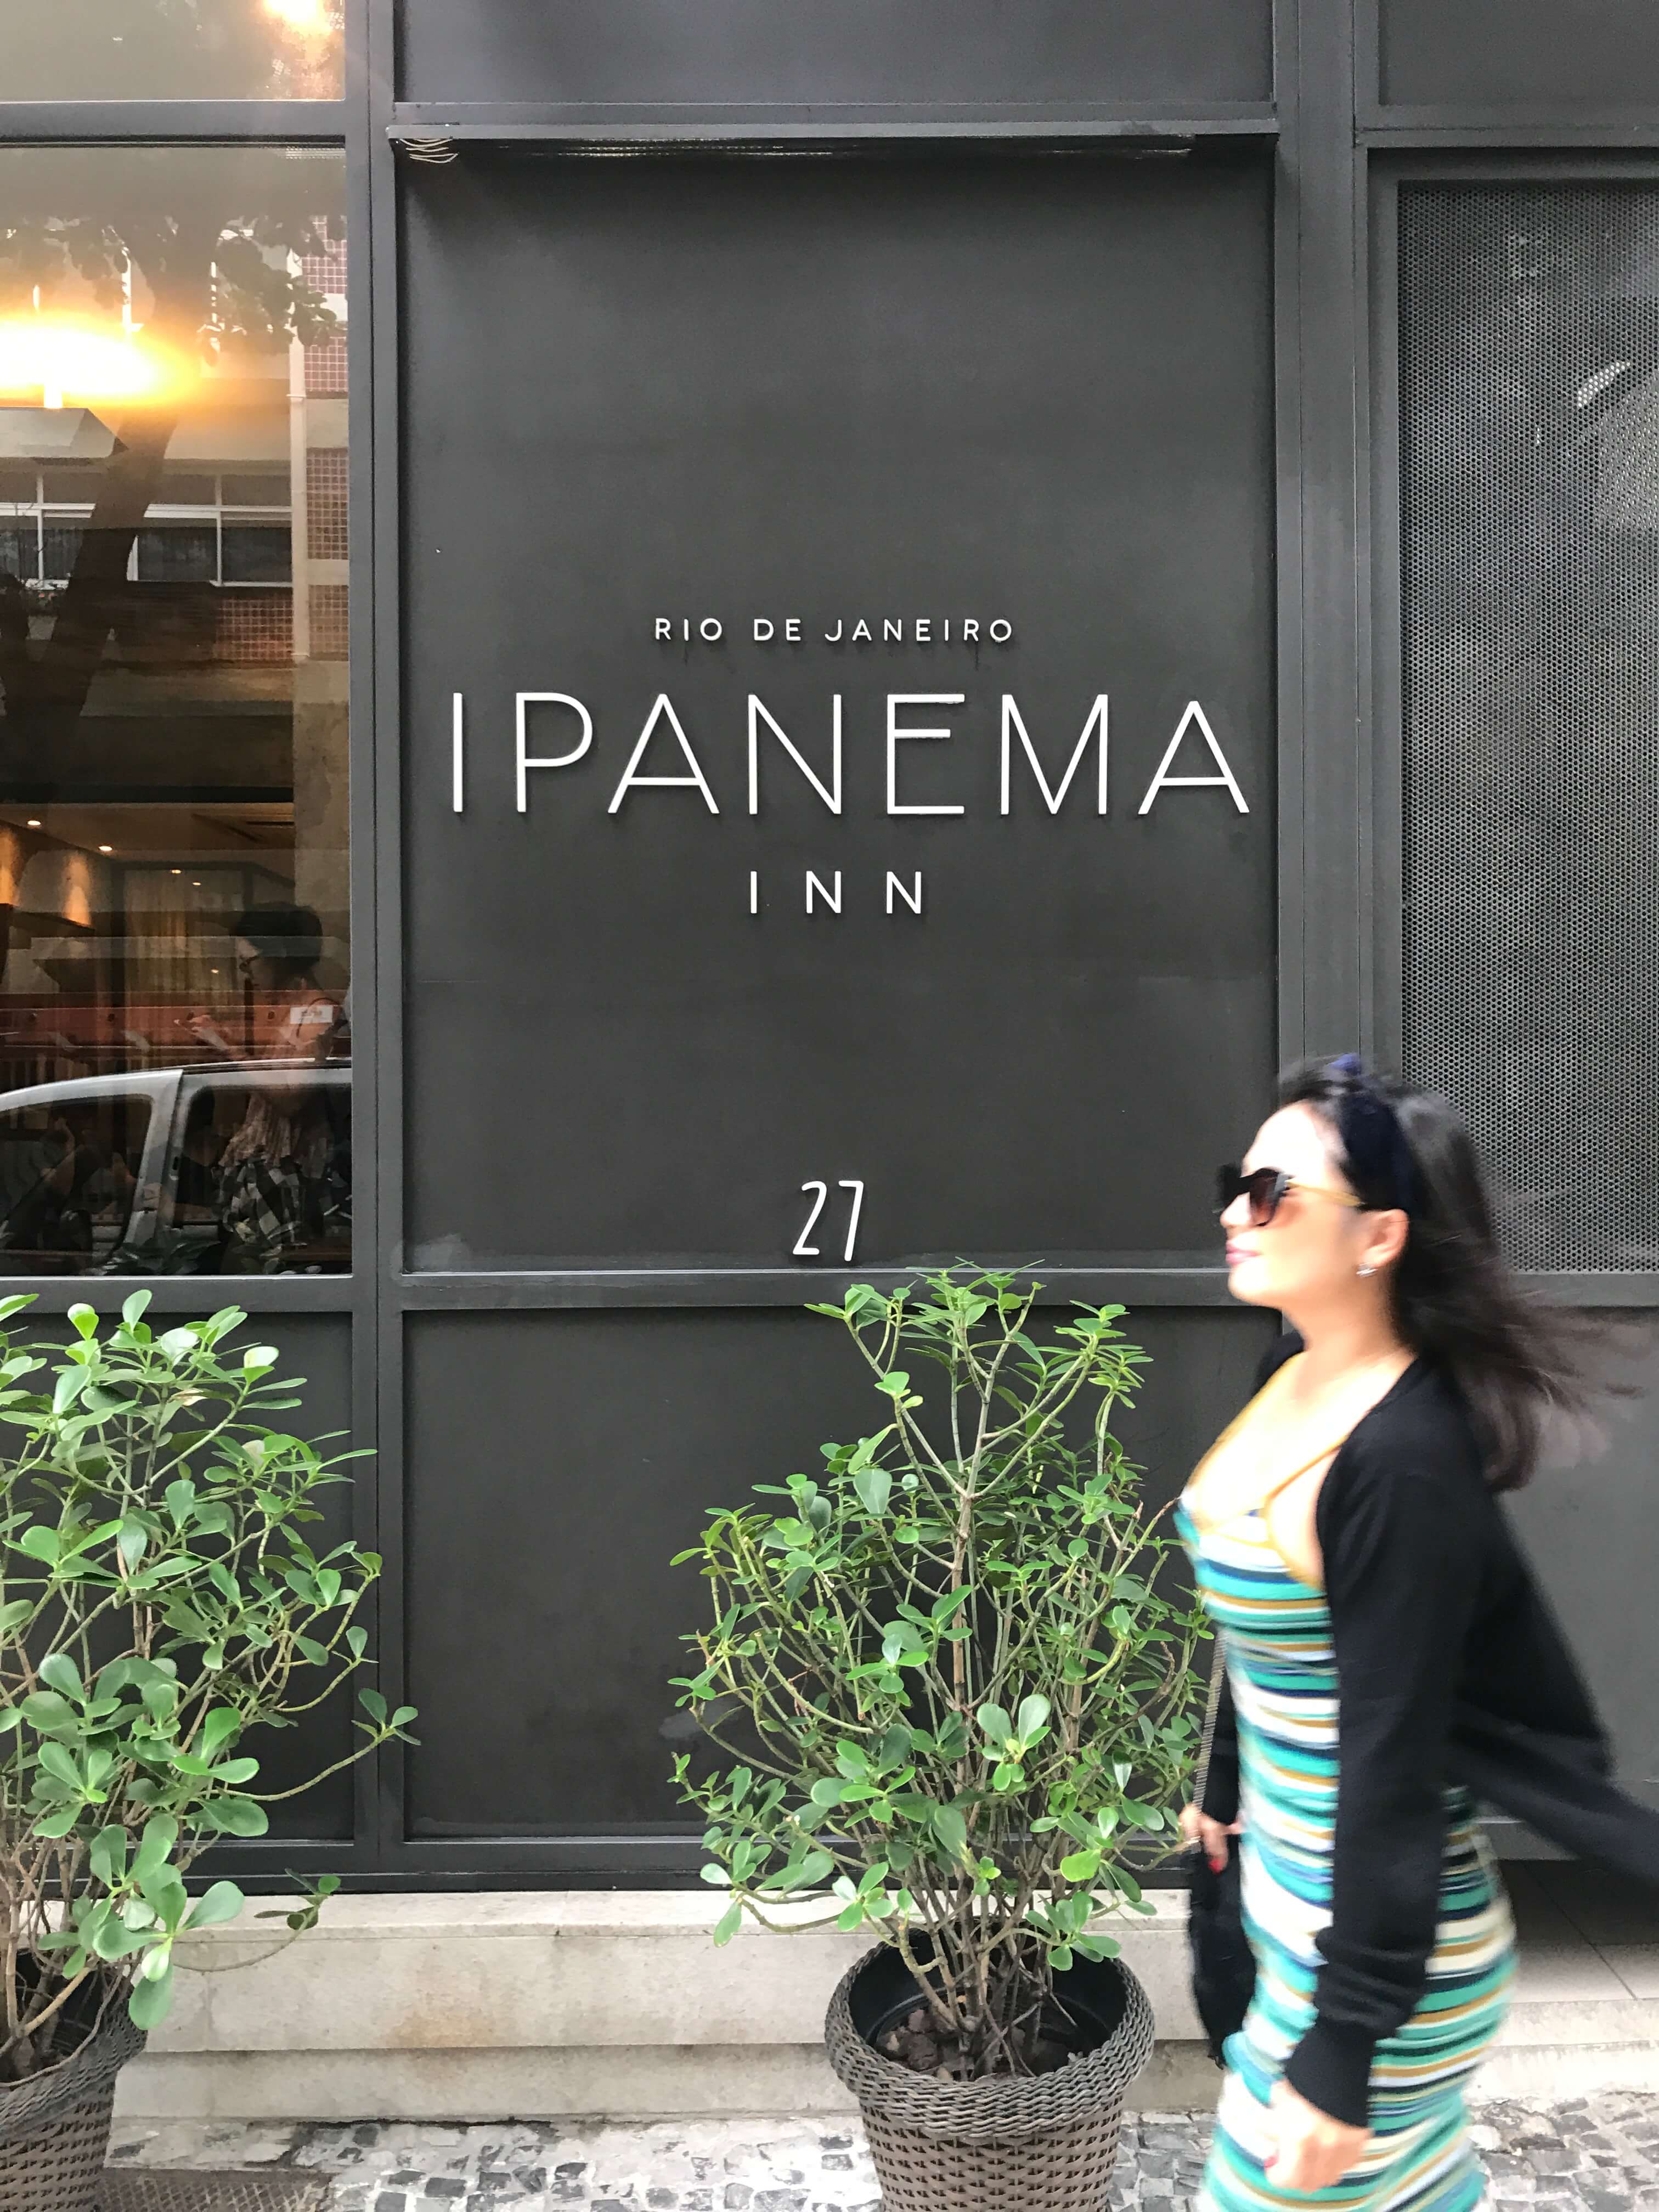 Ipanema Inn – Sugestão de hotel no Rio de Janeiro